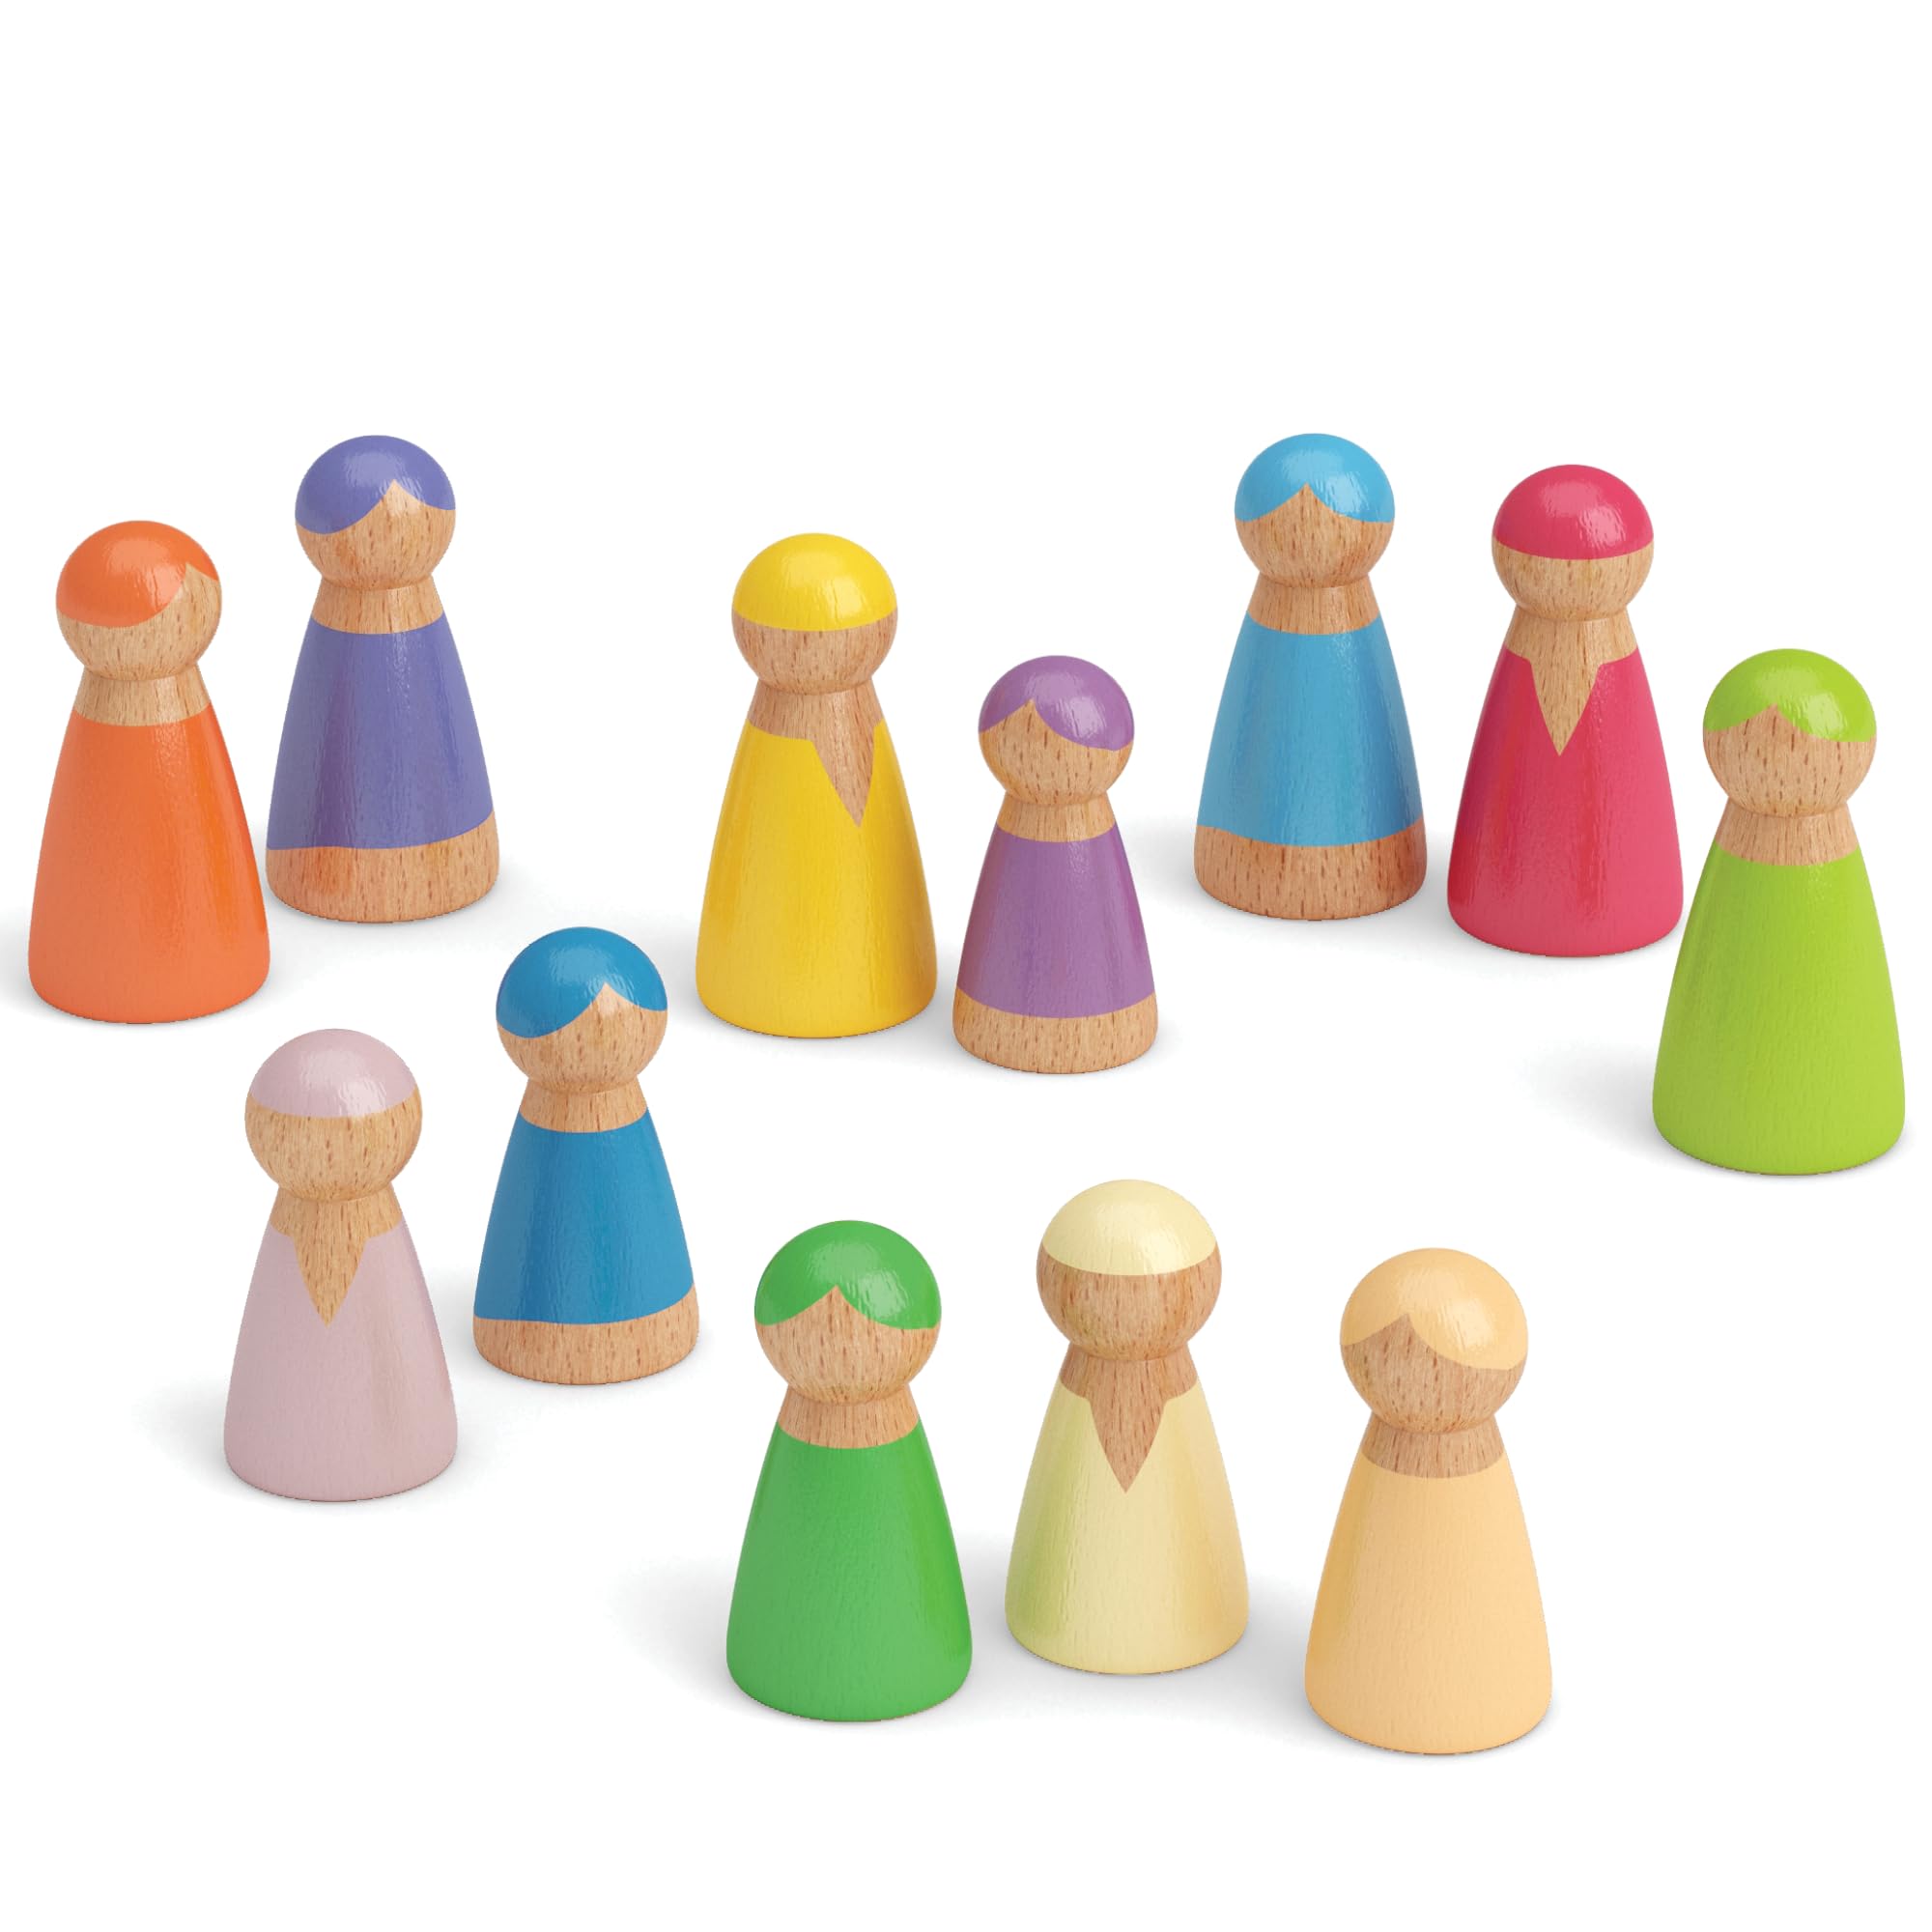 escompte élevé Merle Toys® Figurines en Bois Arc-en-Ciel : Jouet Montessori pour Enfants de 2 à 3 Ans, Cadeau d´anniversaire, Ensemble de 12 Petites poupées colorées en Bois 2thuFW0J8 Vente chaude